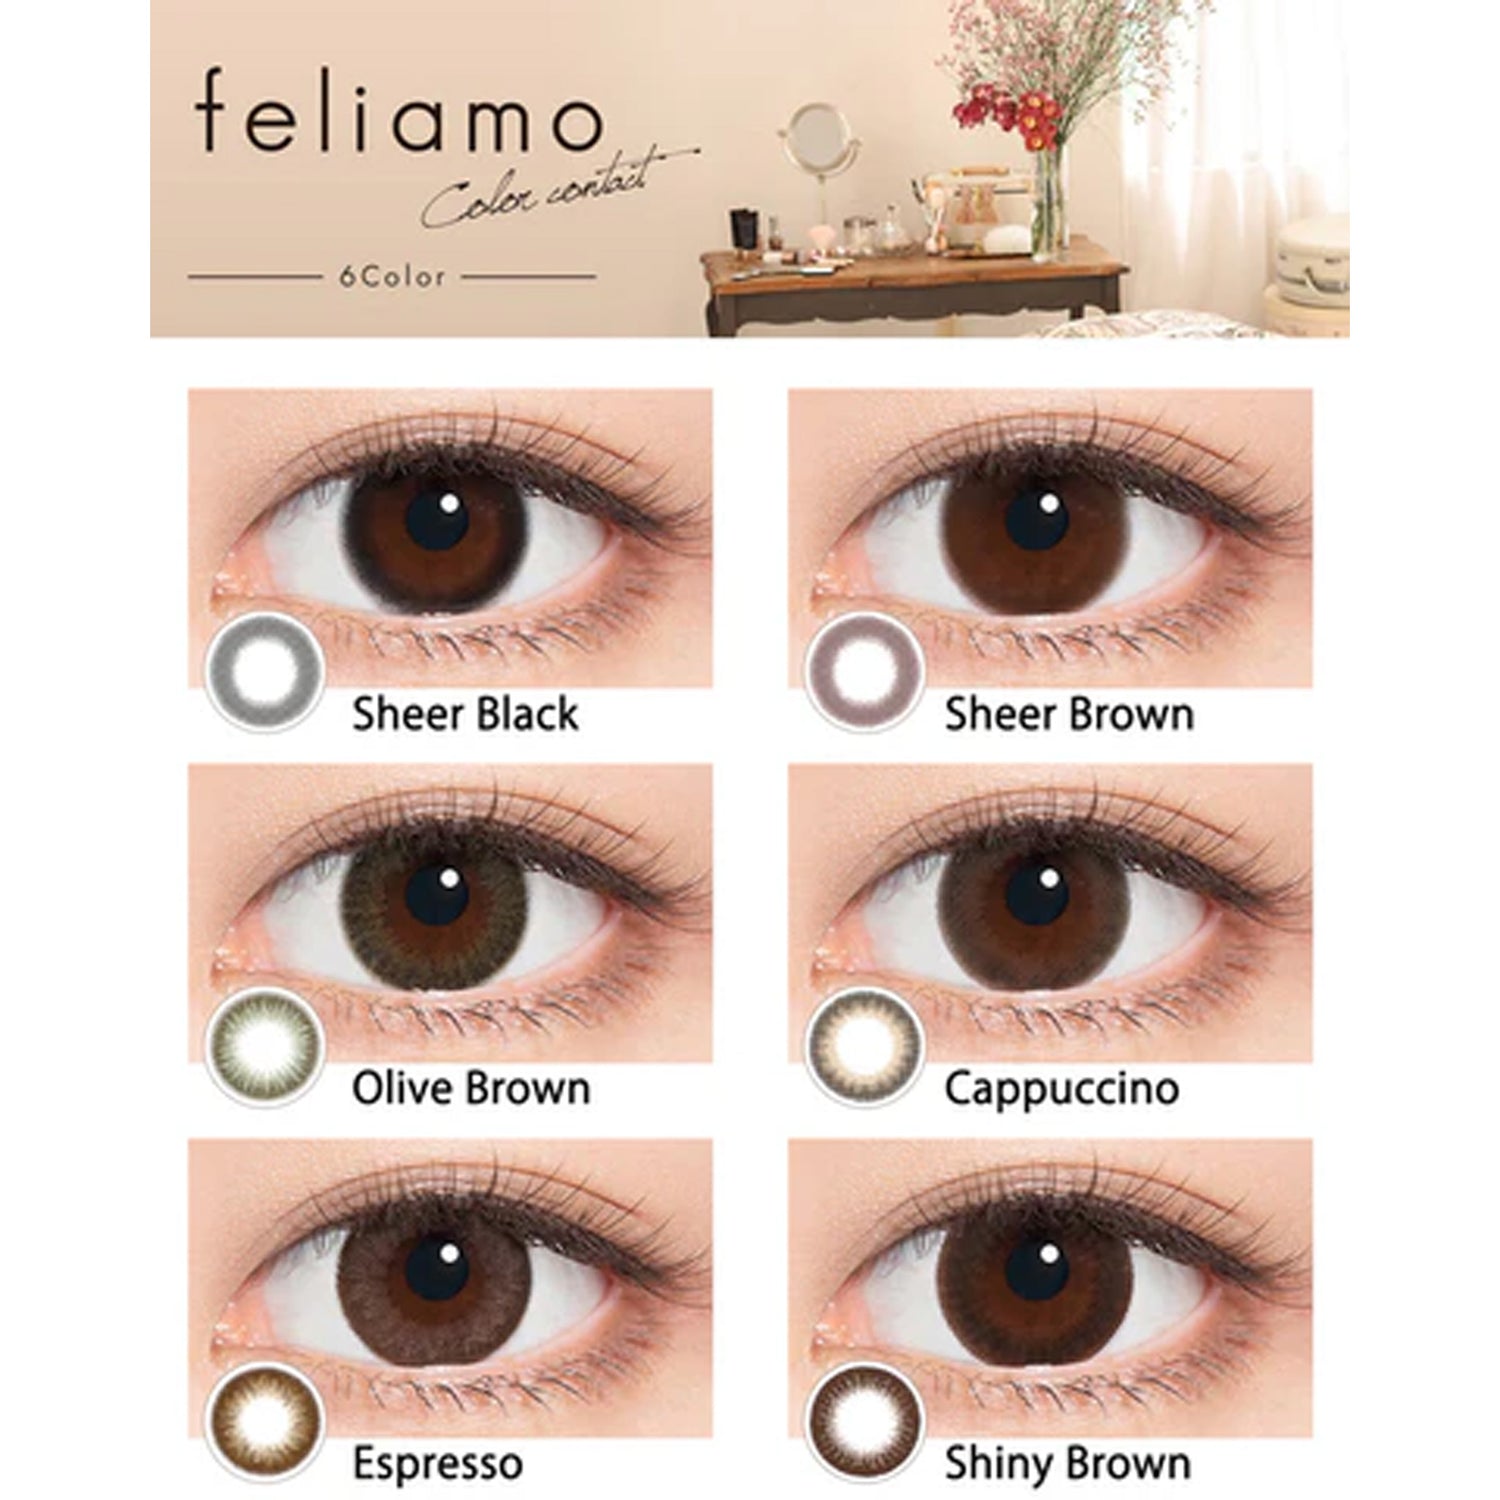 Feliamo Daily Contact Lenses-Espresso 10lenses